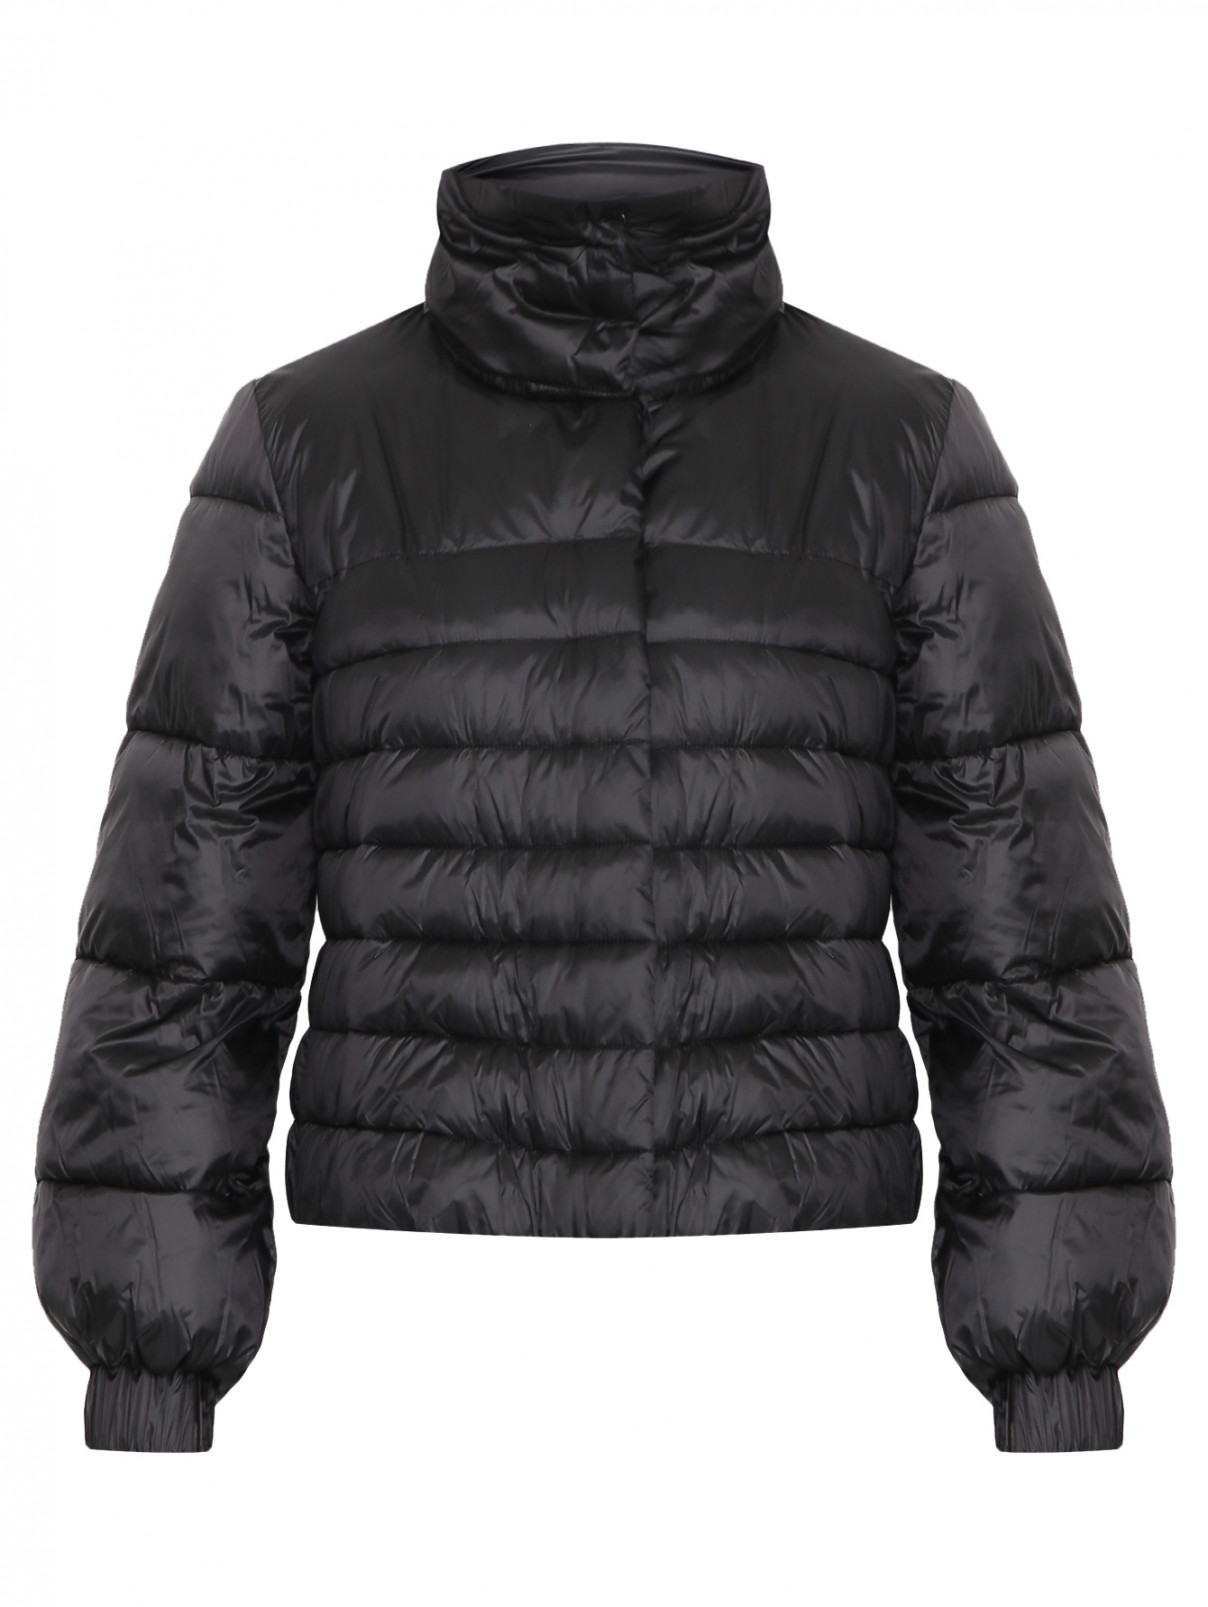 Укороченная стеганая куртка Persona by Marina Rinaldi  –  Общий вид  – Цвет:  Черный